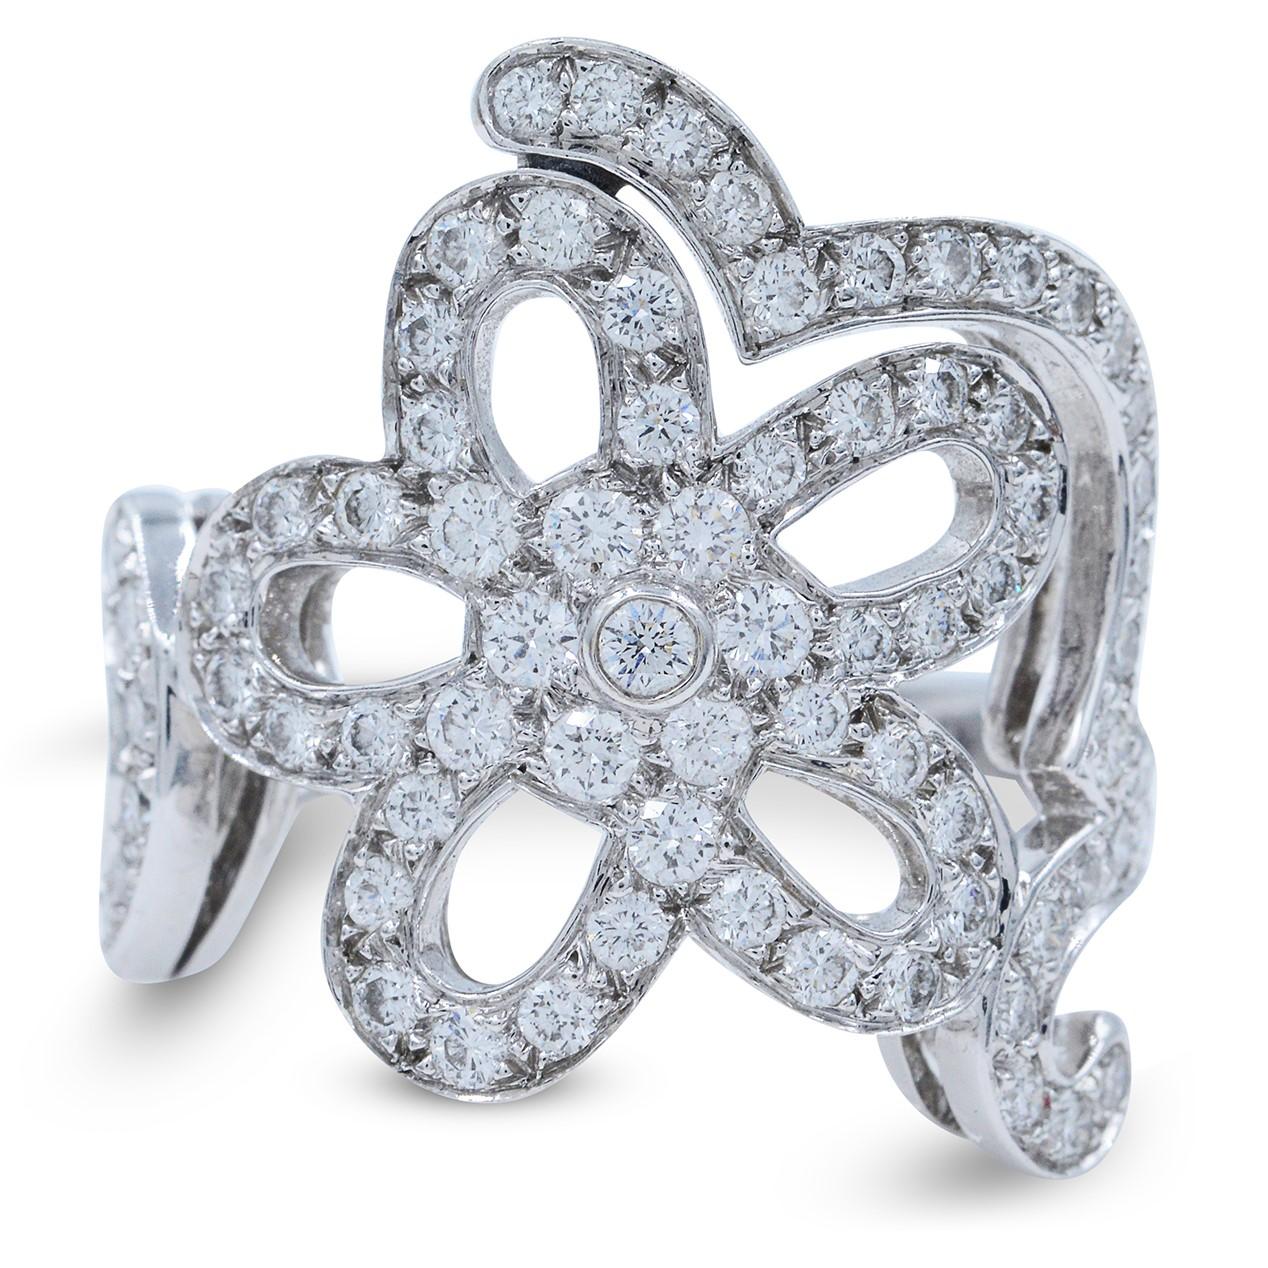 Women's Van Cleef & Arpels 18 Karat White Gold Pave Diamond Floral Ring 1.56 Carat Size 